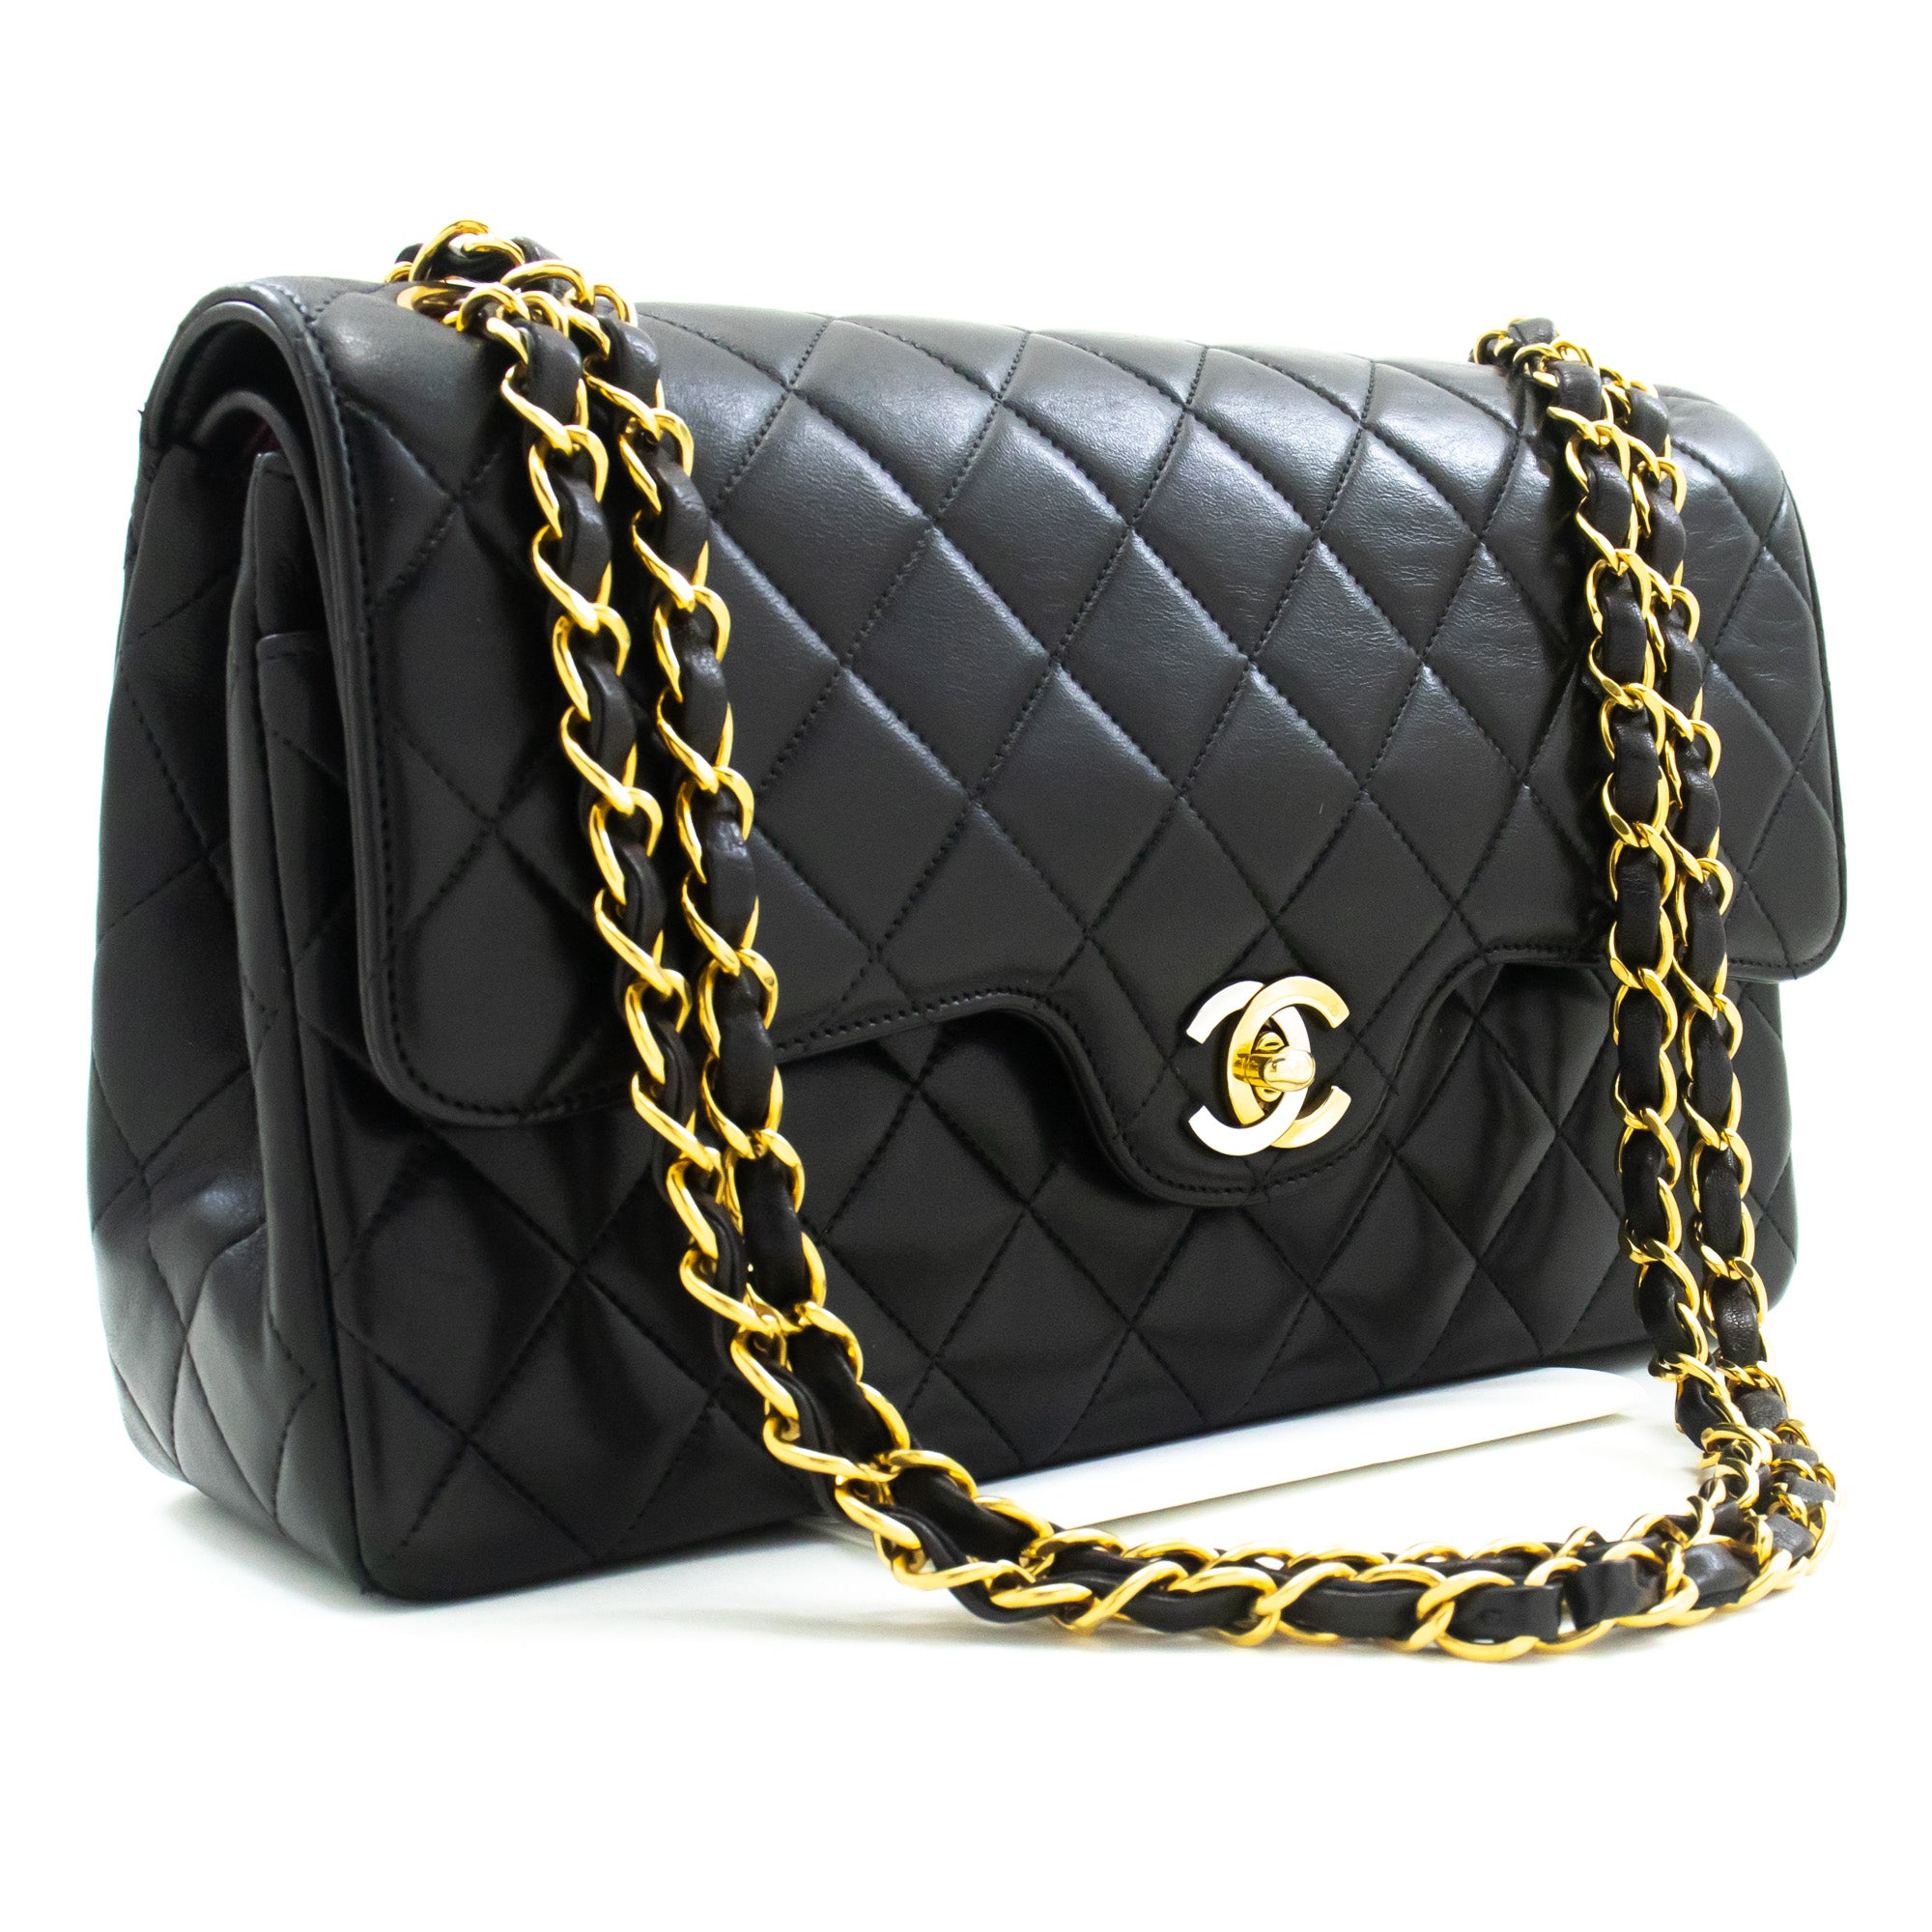 CHANEL Paris Limited Chain Shoulder Bag Black Double Flap Quilted m57